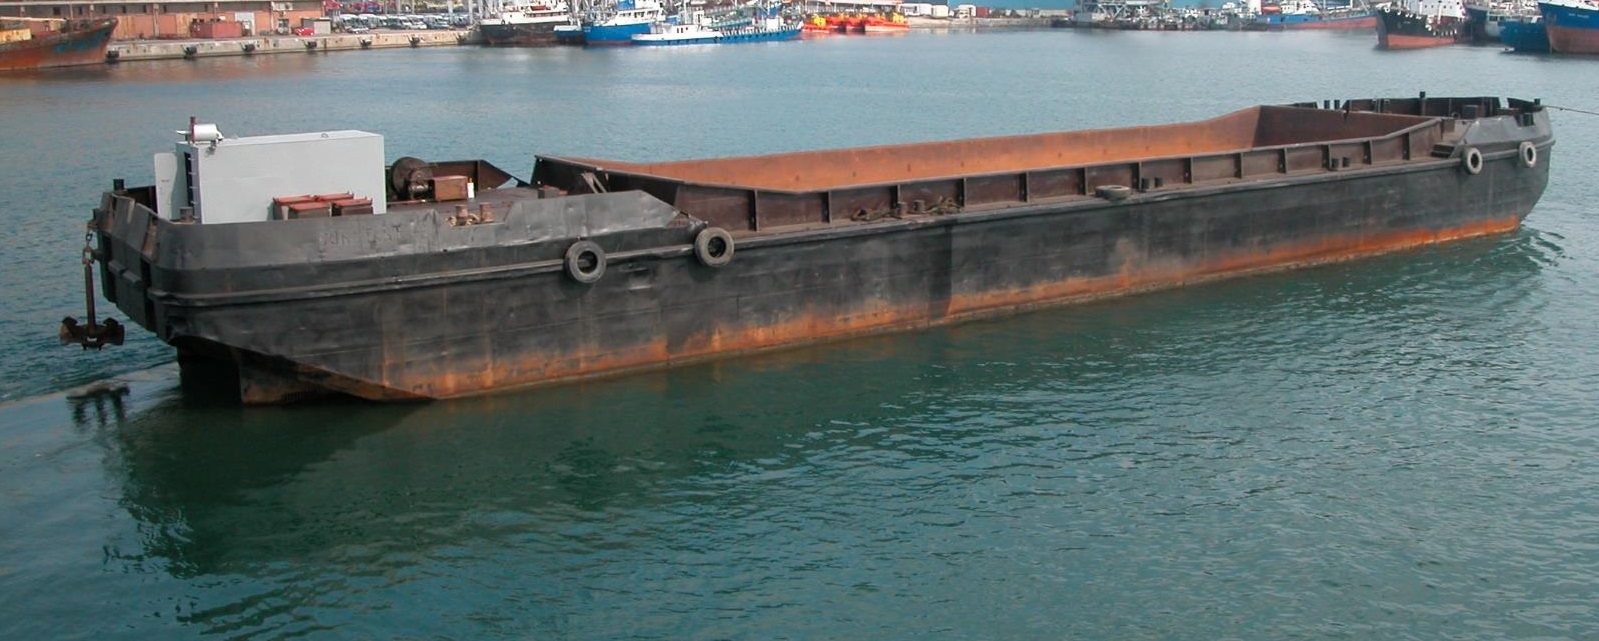 split barge